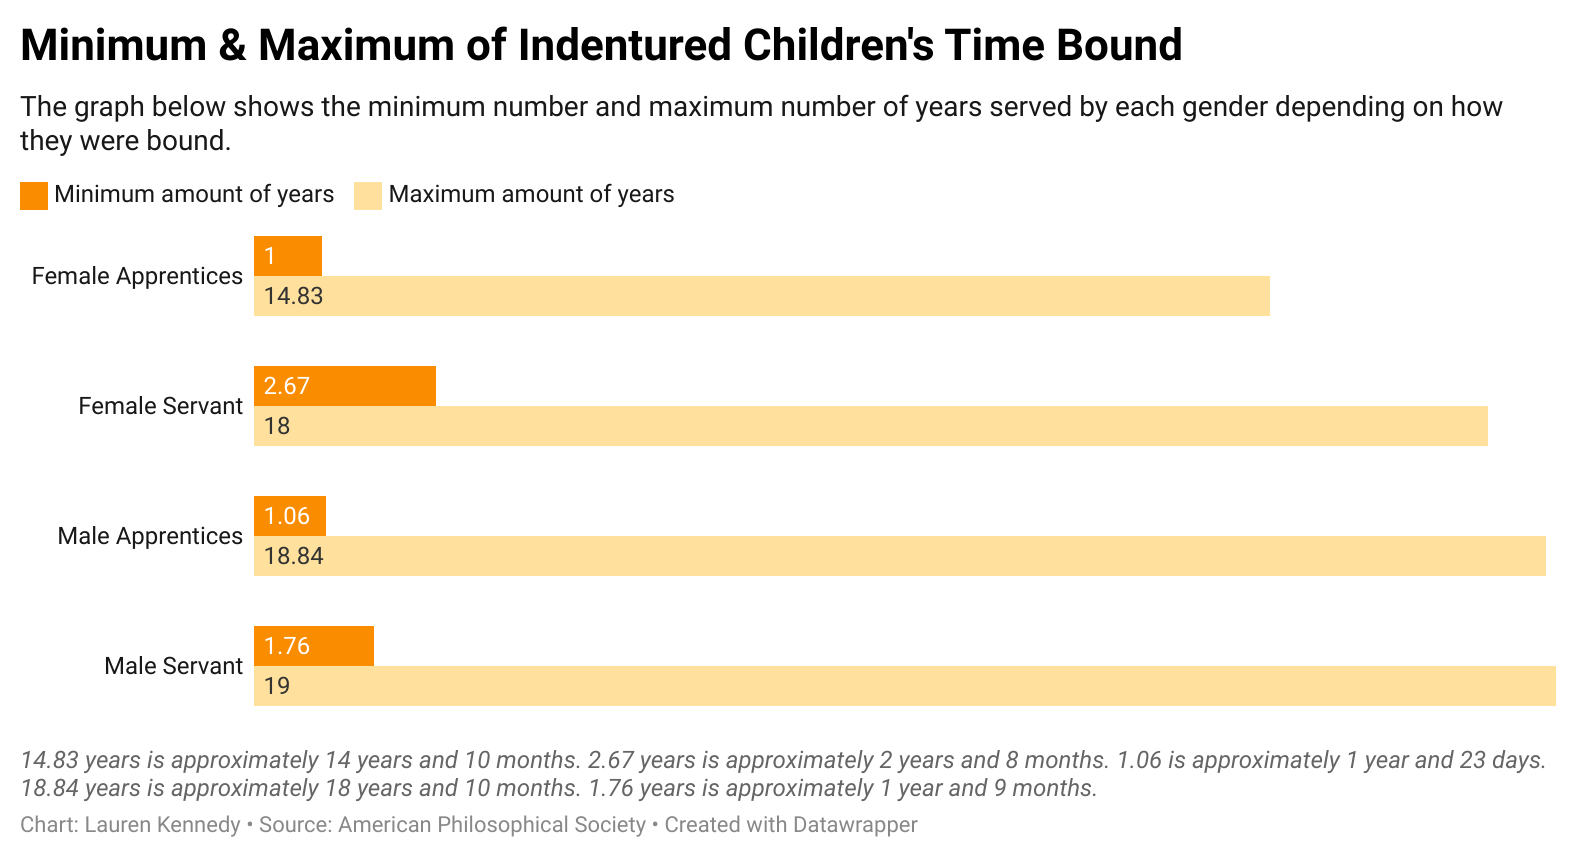 Minimum and maximum of Indentured Children's Time Bound